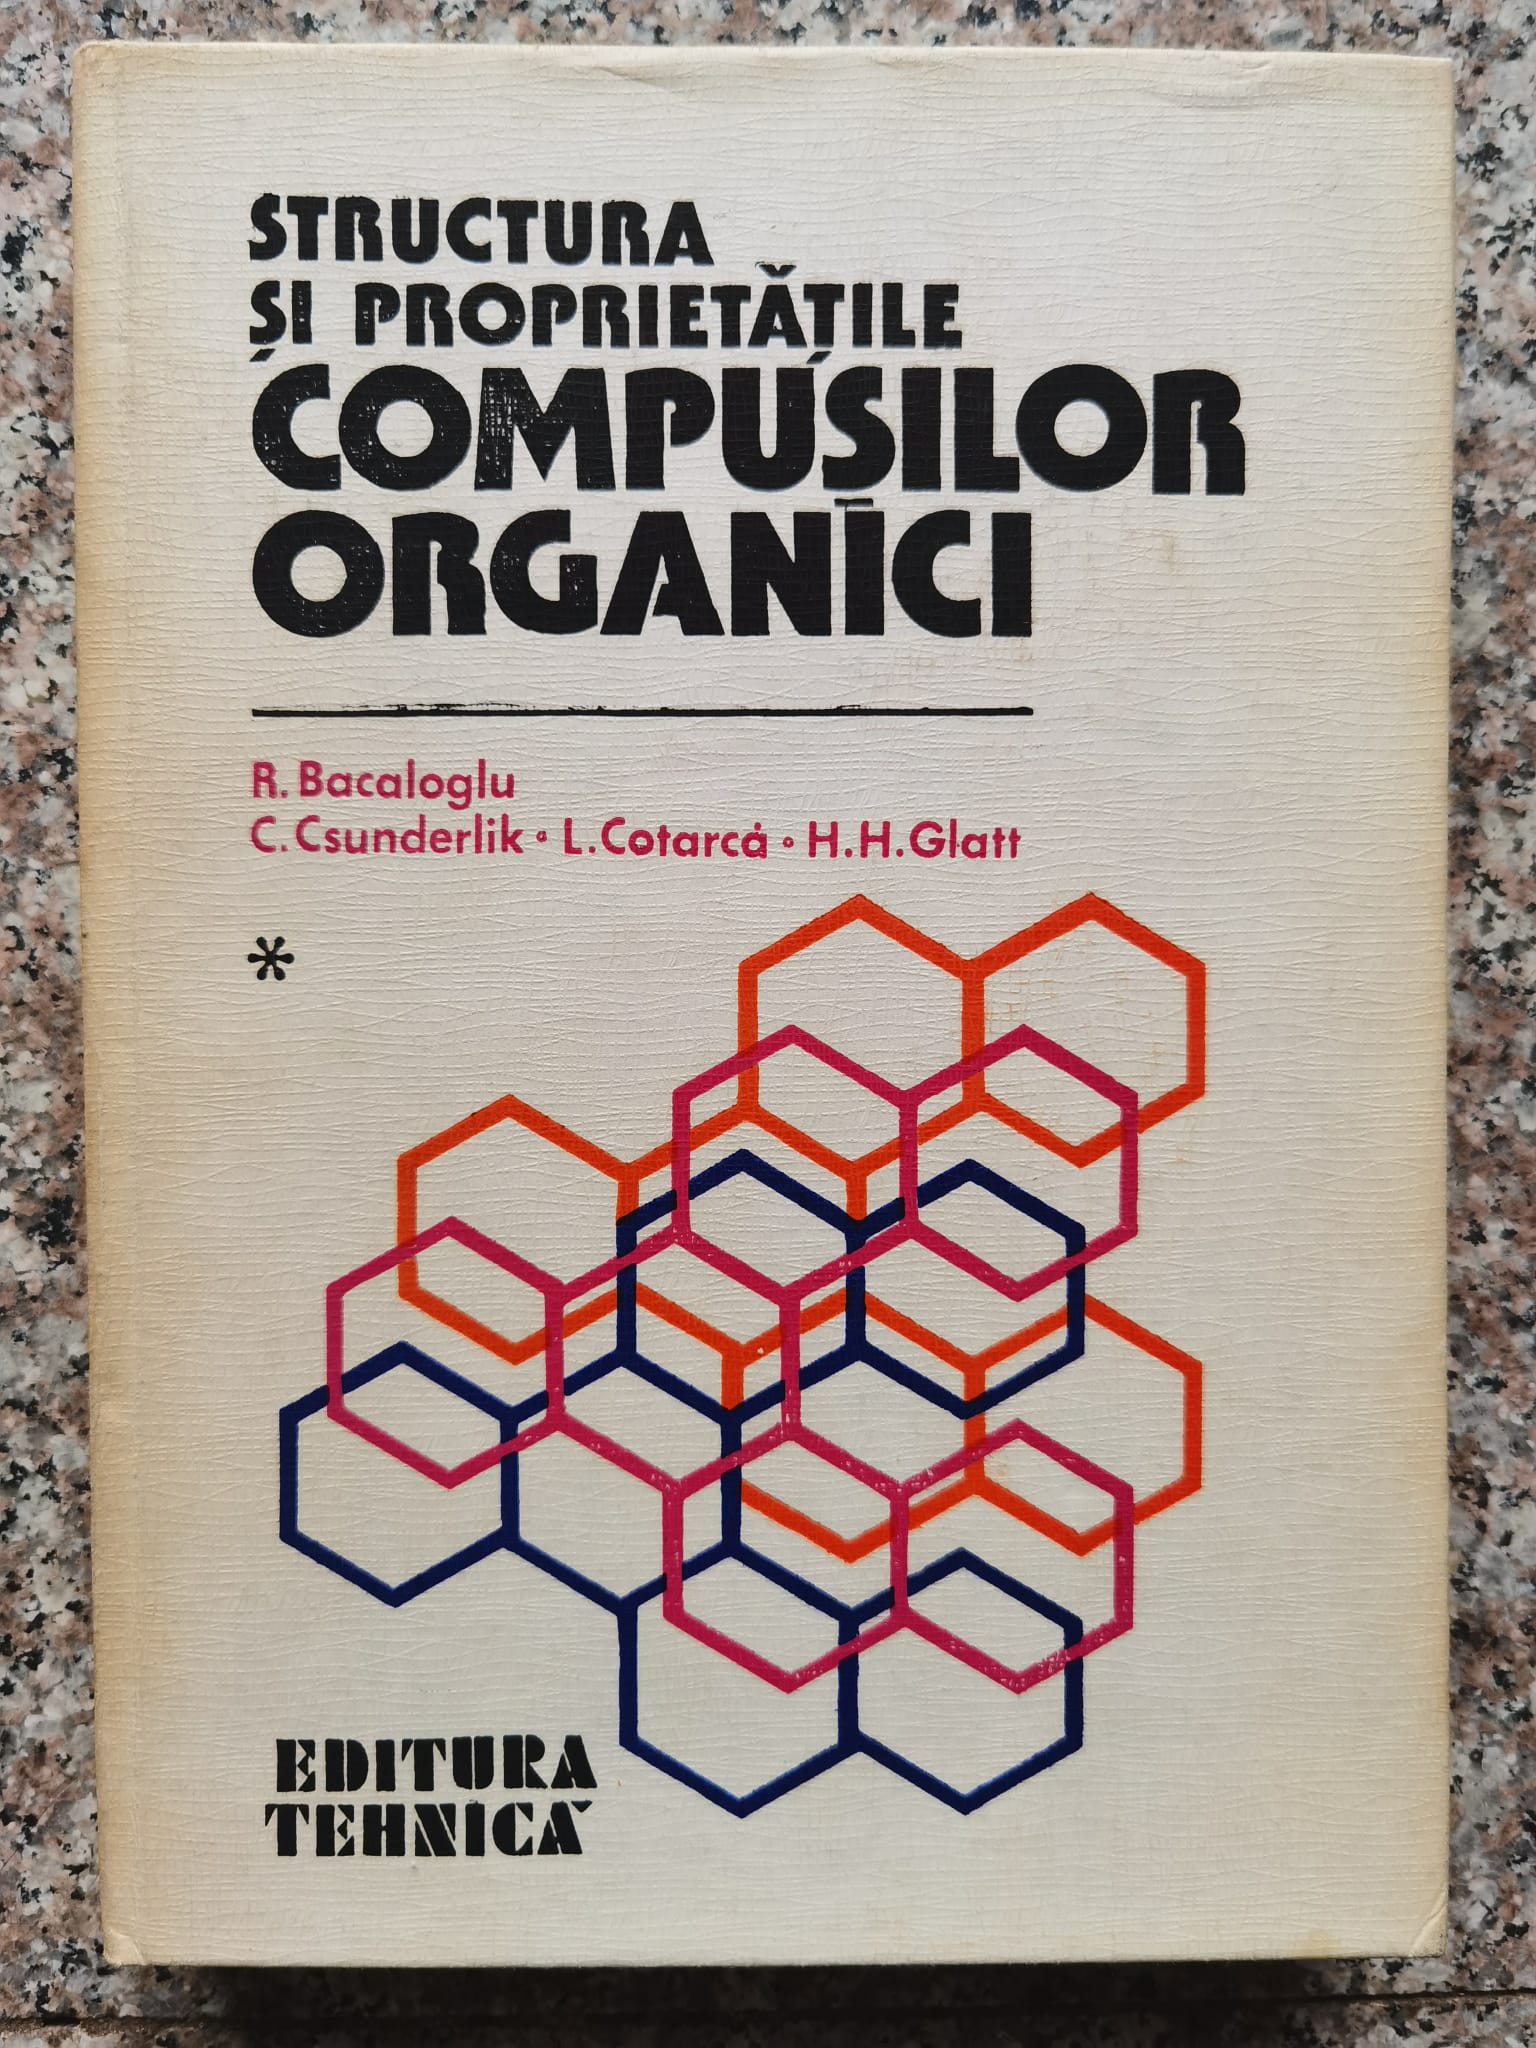 structura si proprietatile compusilor organici vol.1                                                 colectiv                                                                                            